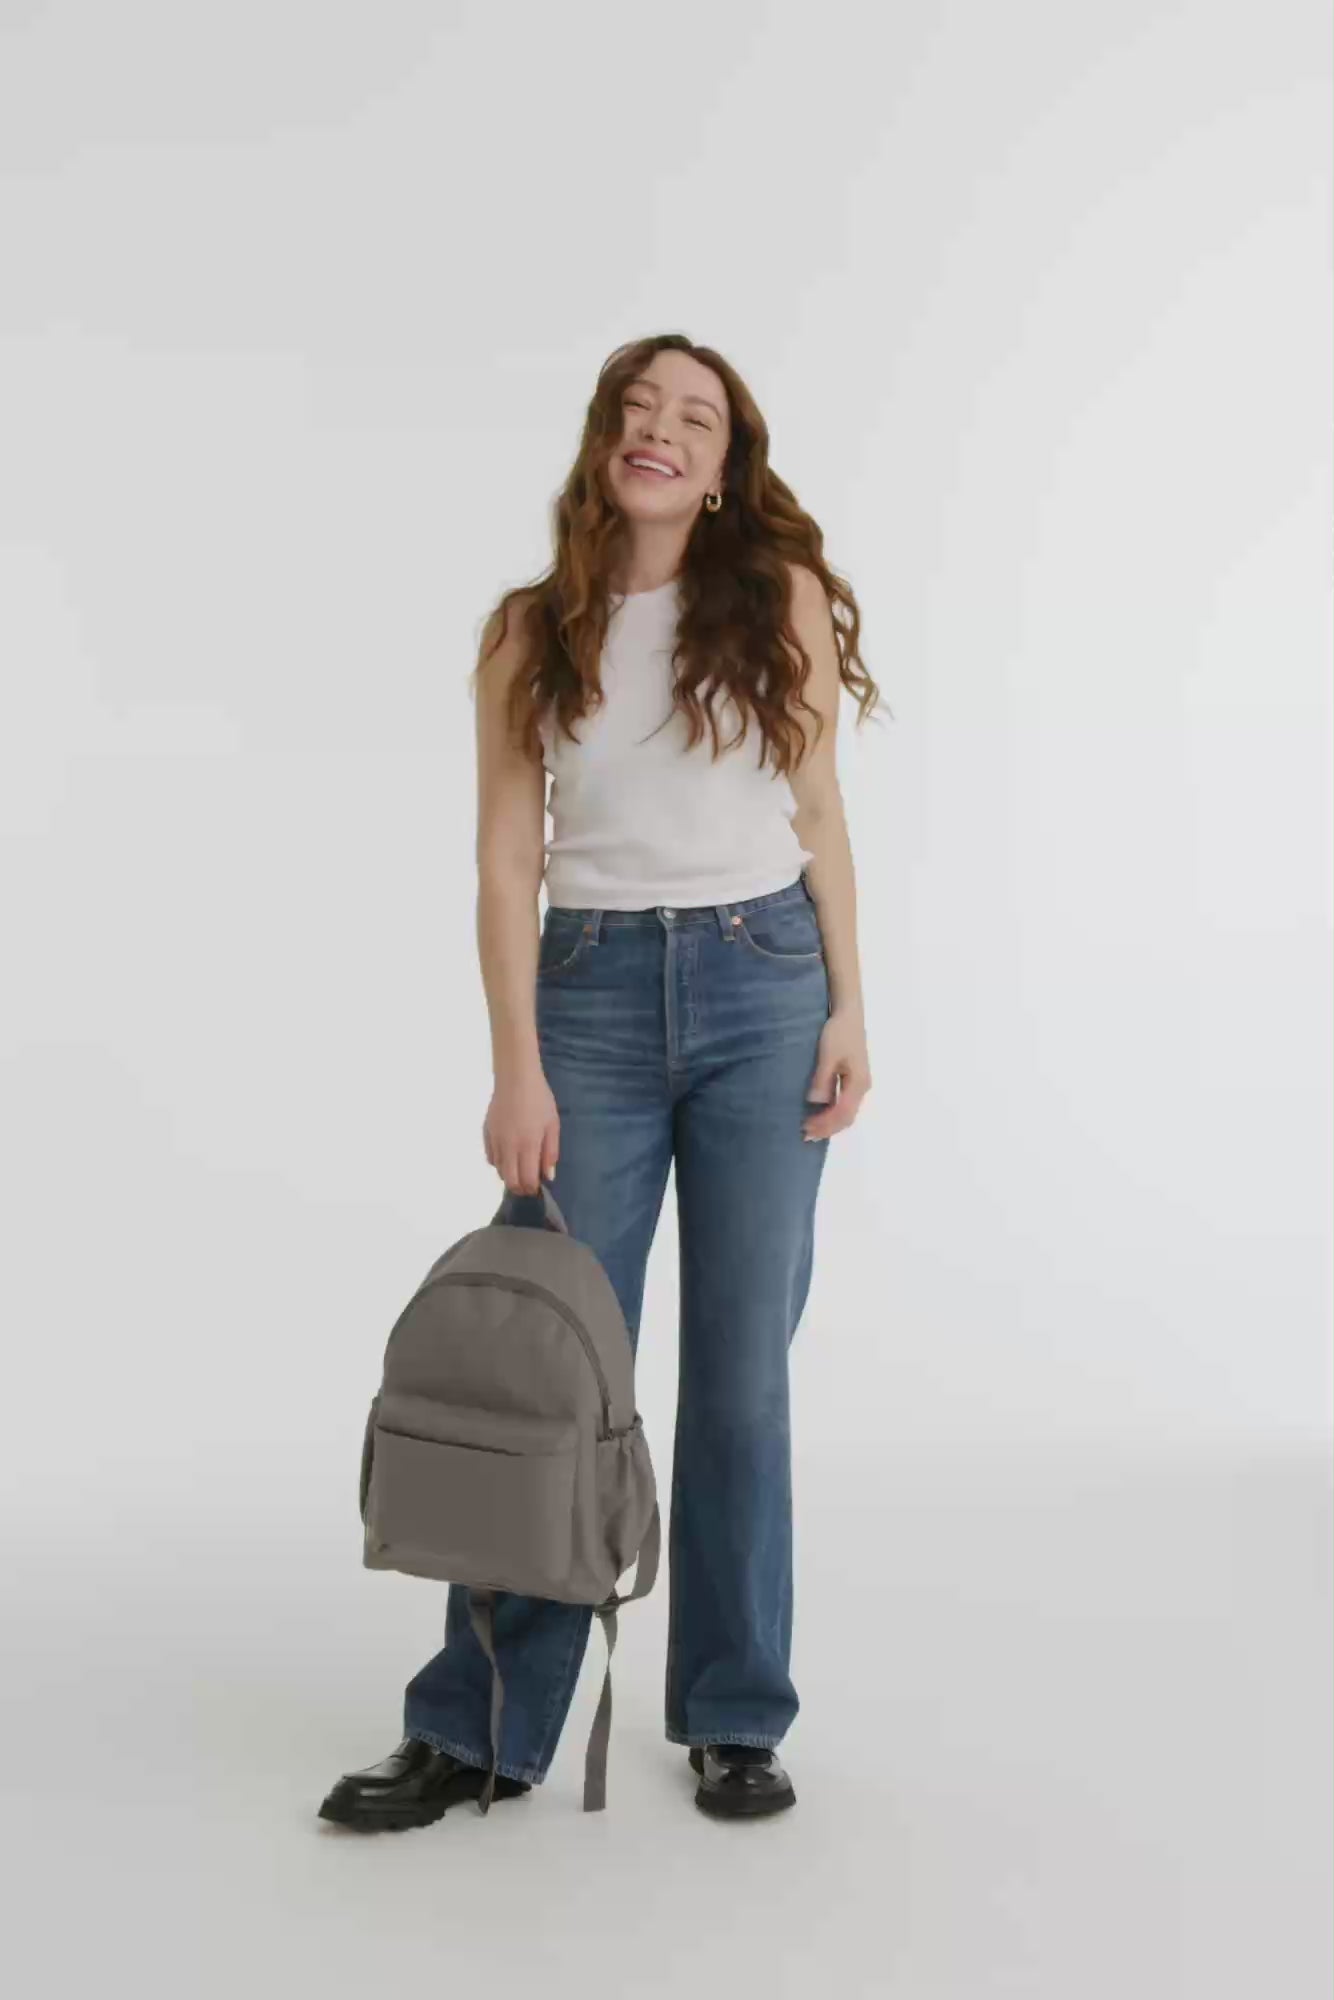 Macadam Luiheid scheepsbouw Béis 'The BEISICS Backpack' in Grey - Backpack For Work & Travel With  Laptop Sleeve in Grey